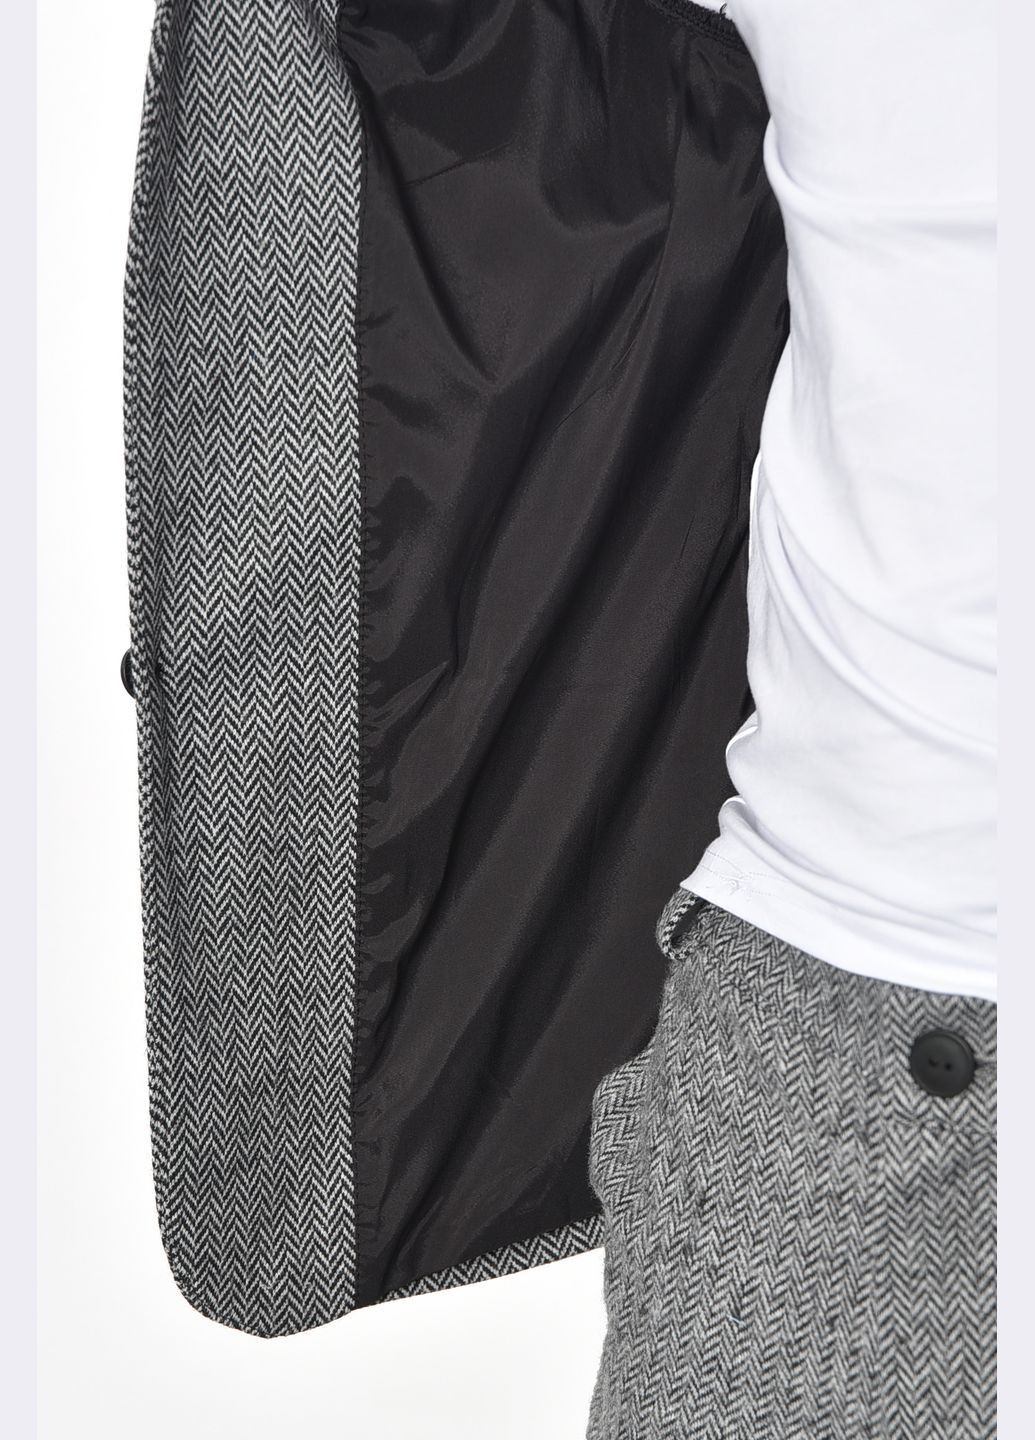 Светло-серый демисезонный костюм мужской светло-серого цвета брючный Let's Shop